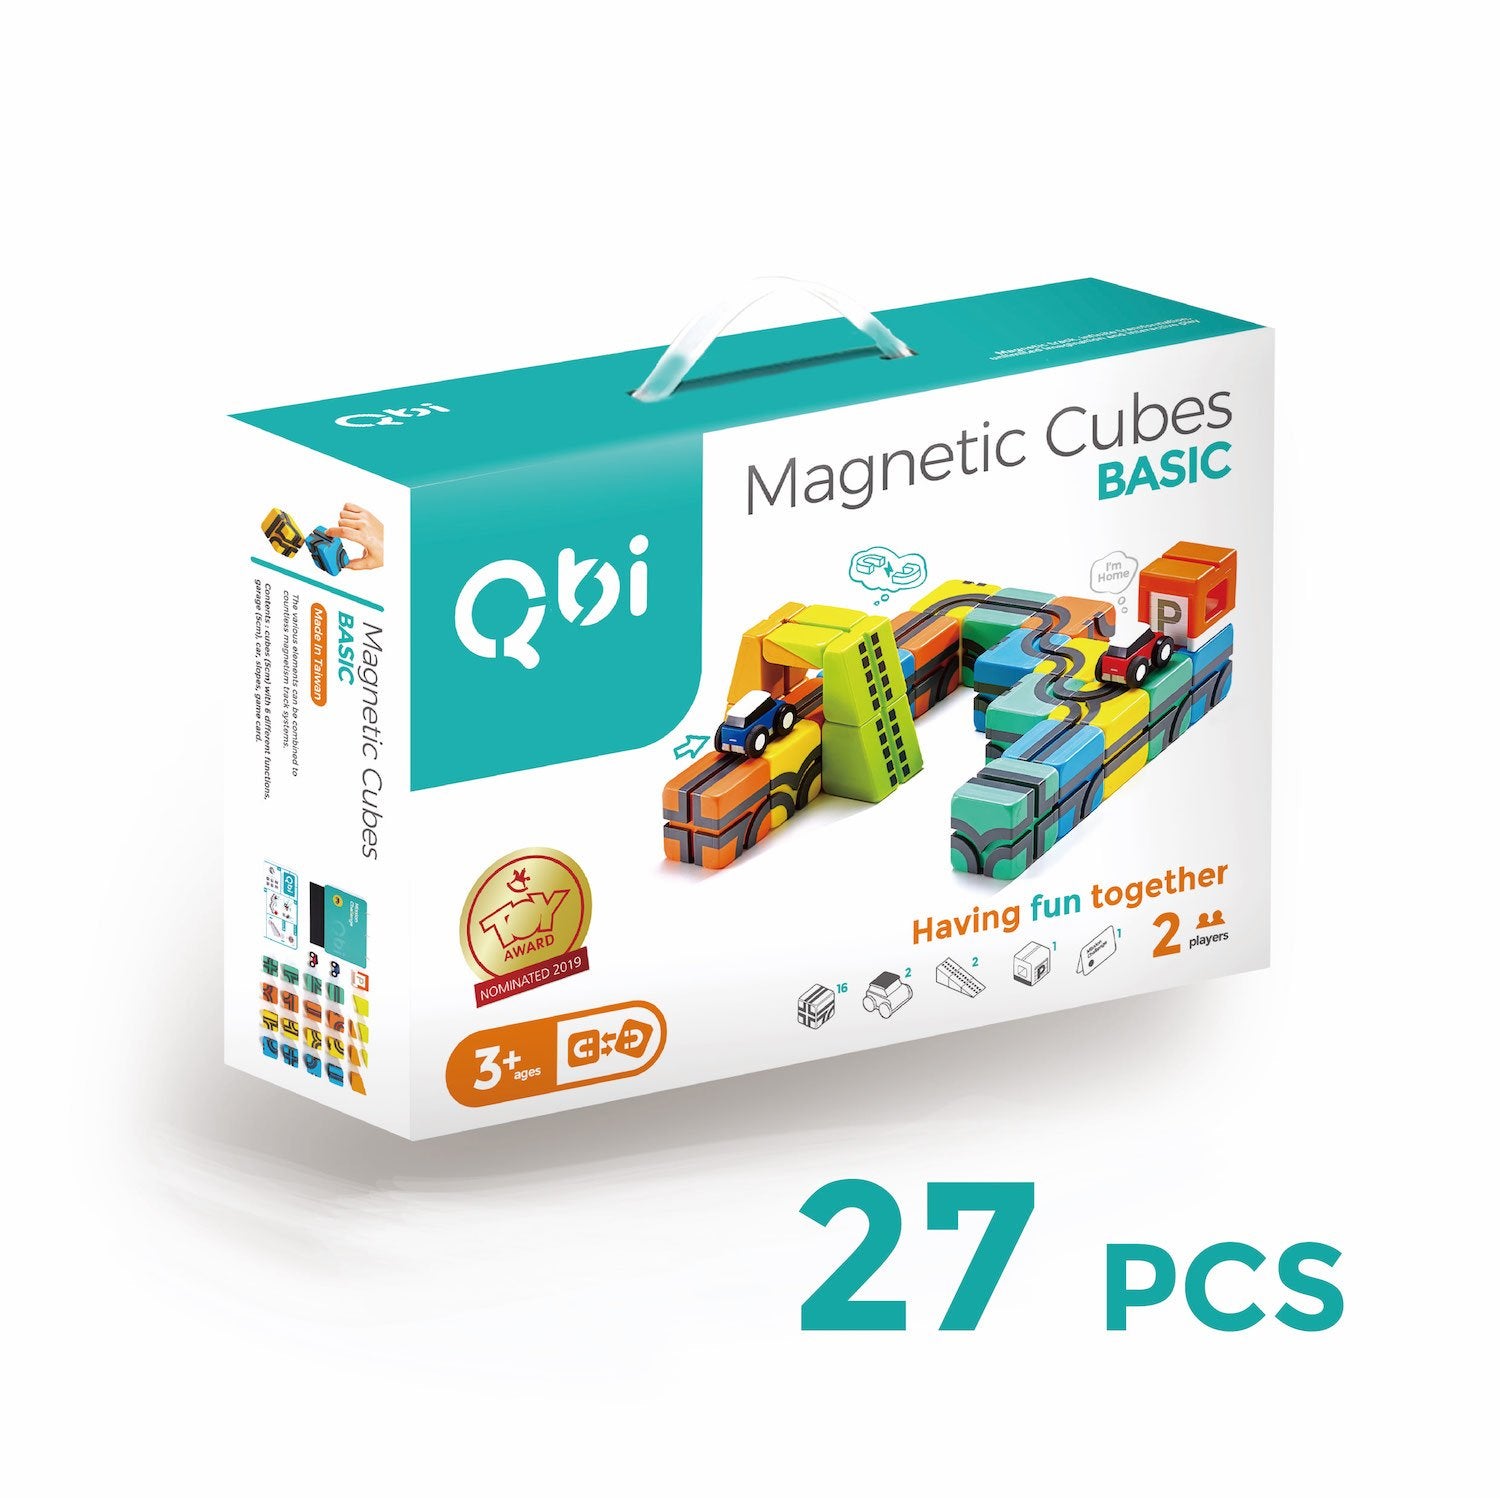 QbiToy Magnetic Cubes - Basic Pack - STEM Toys